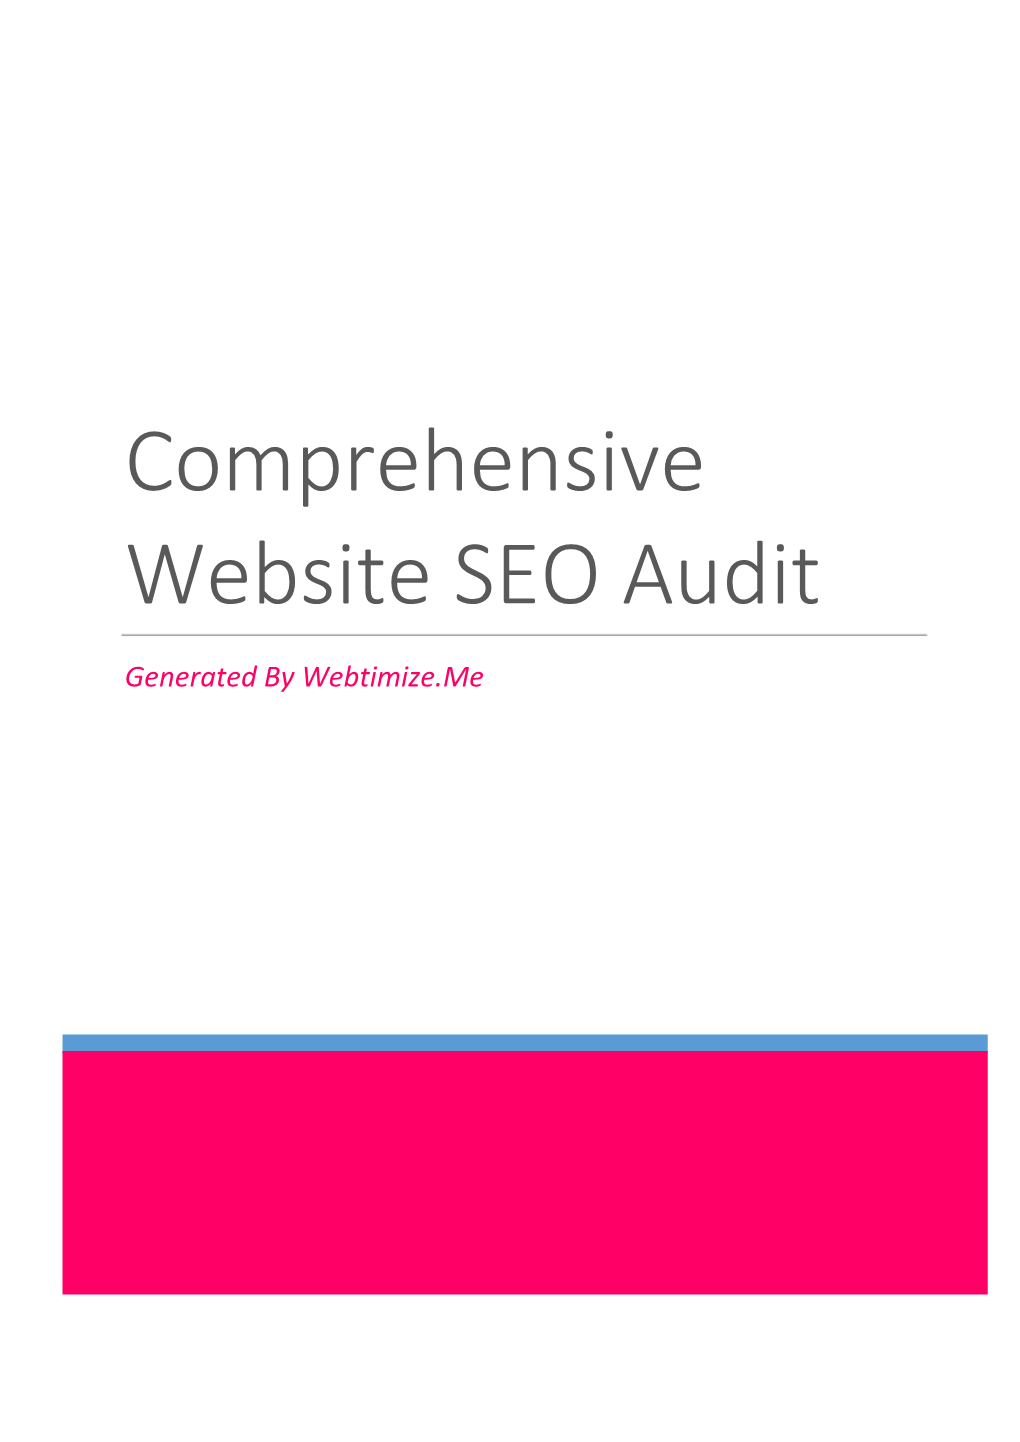 Comprehensive Website SEO Audit